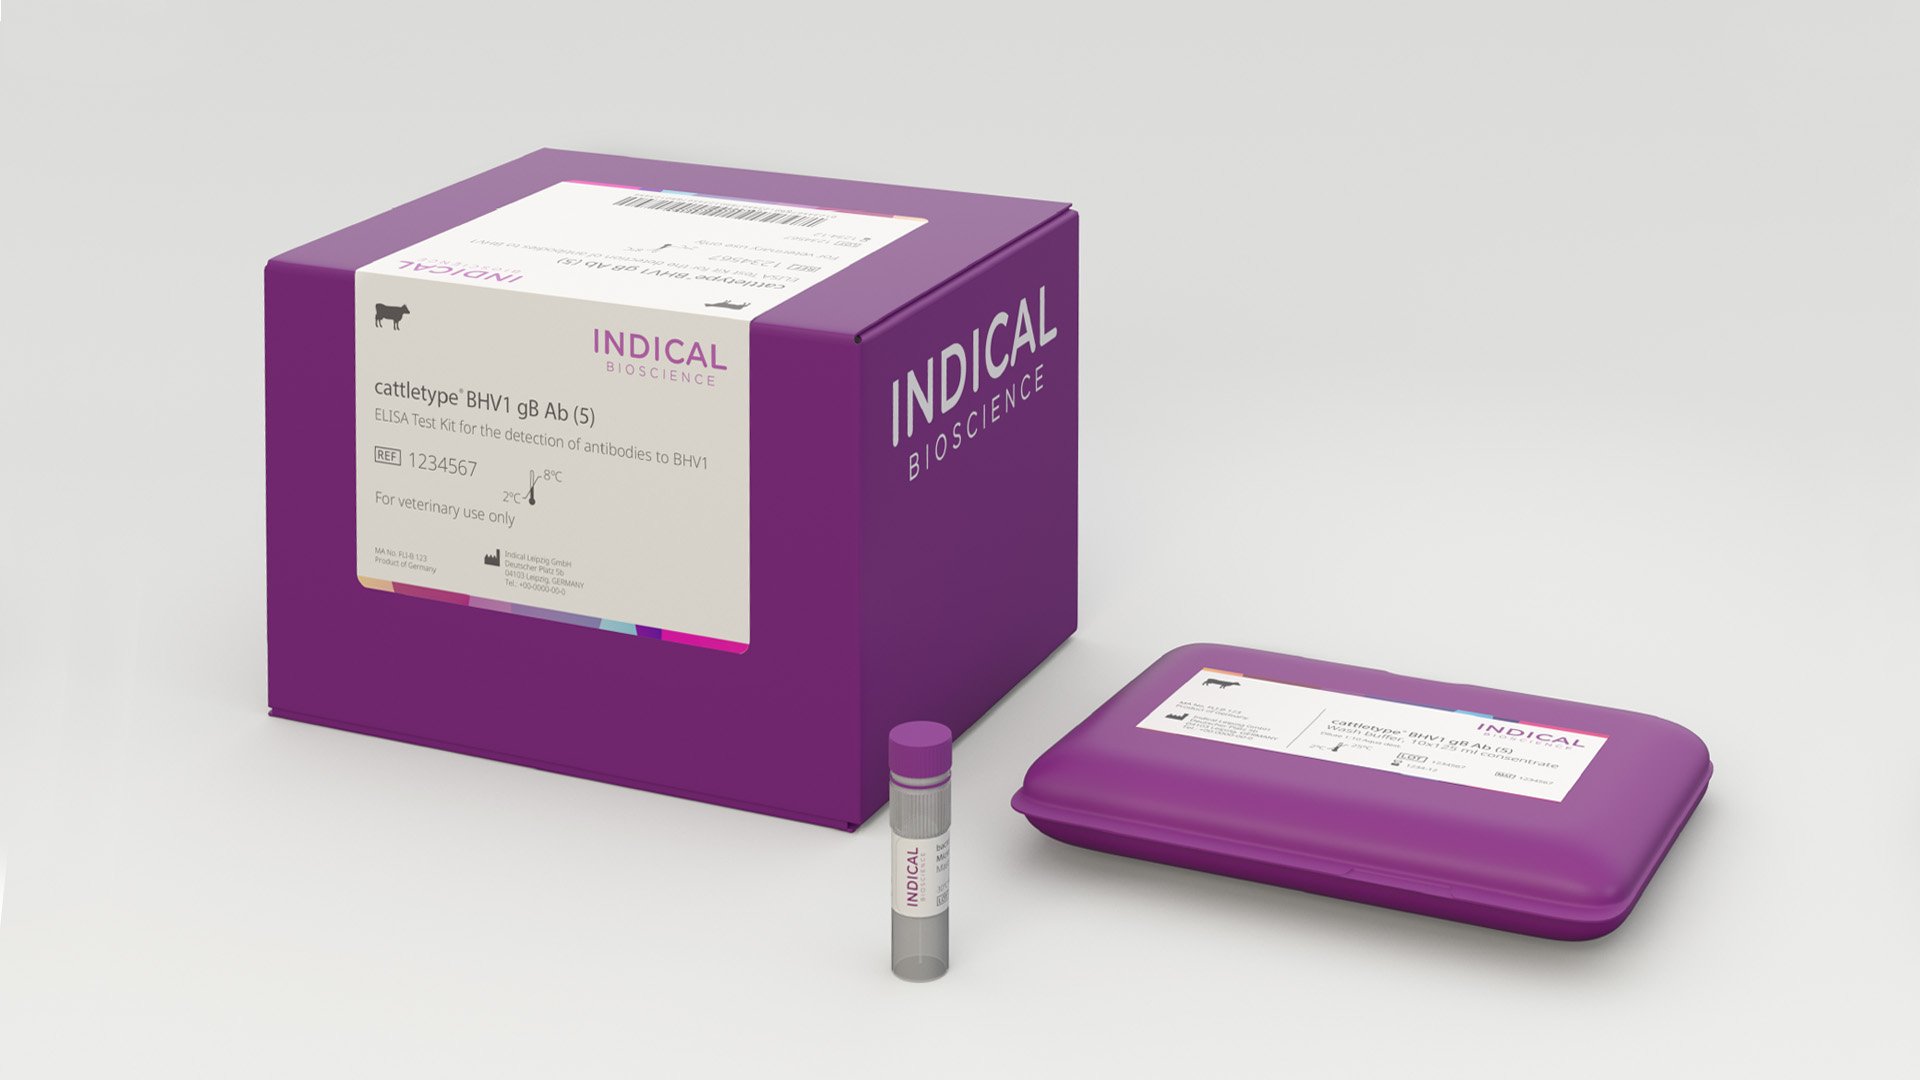 Indical Bioscience packaging design by LOOP Associates